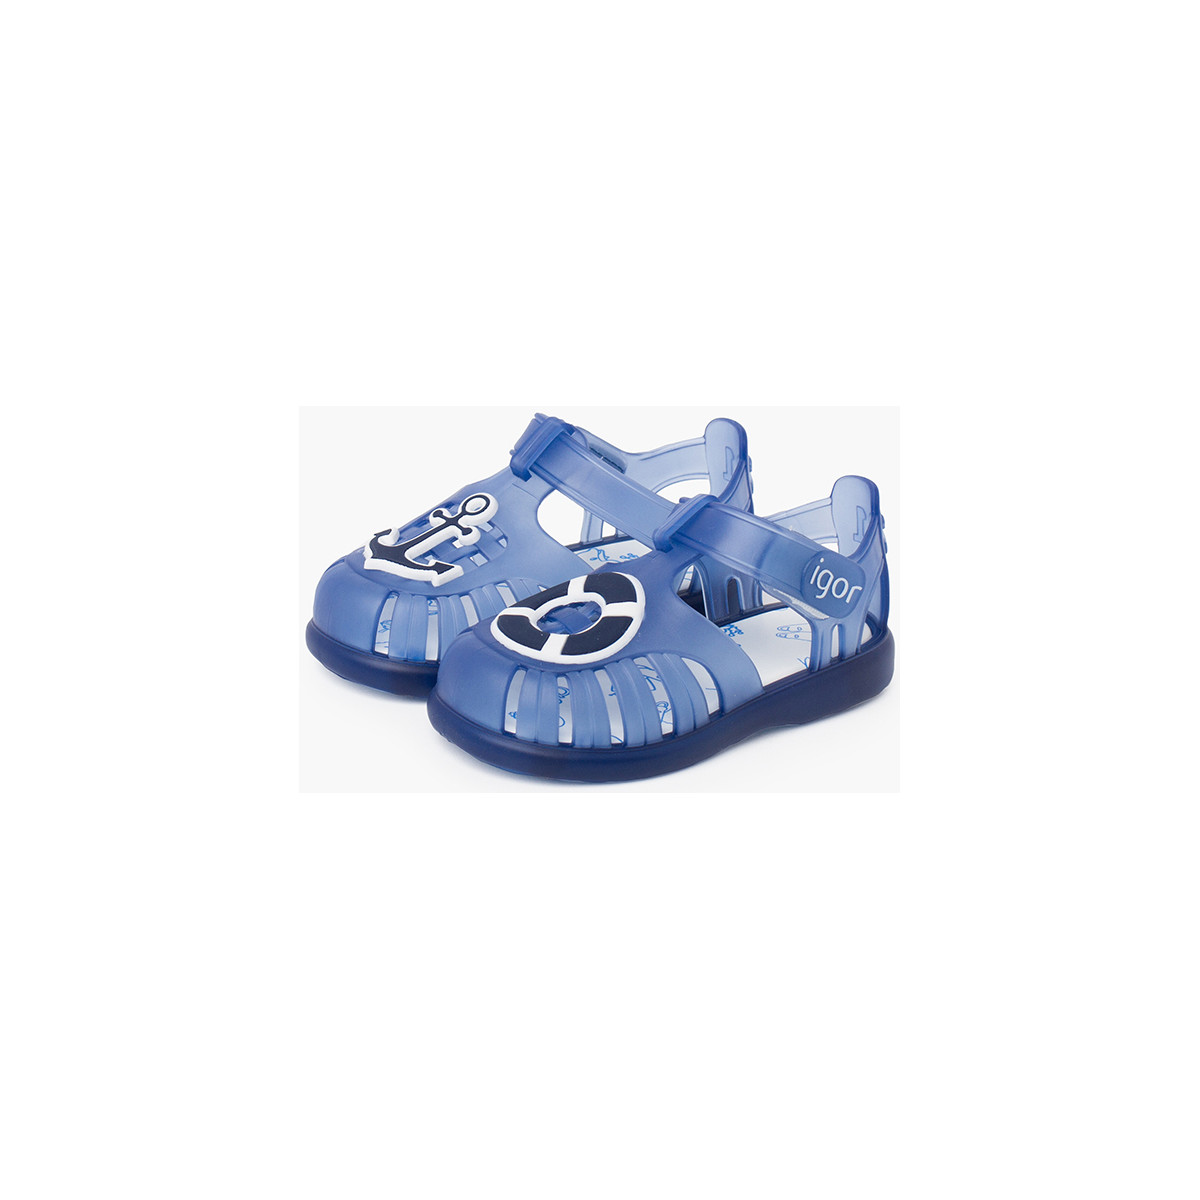 Pisamonas Bleu Sandales pour la plage nautiques à scratch HnN5tLqp